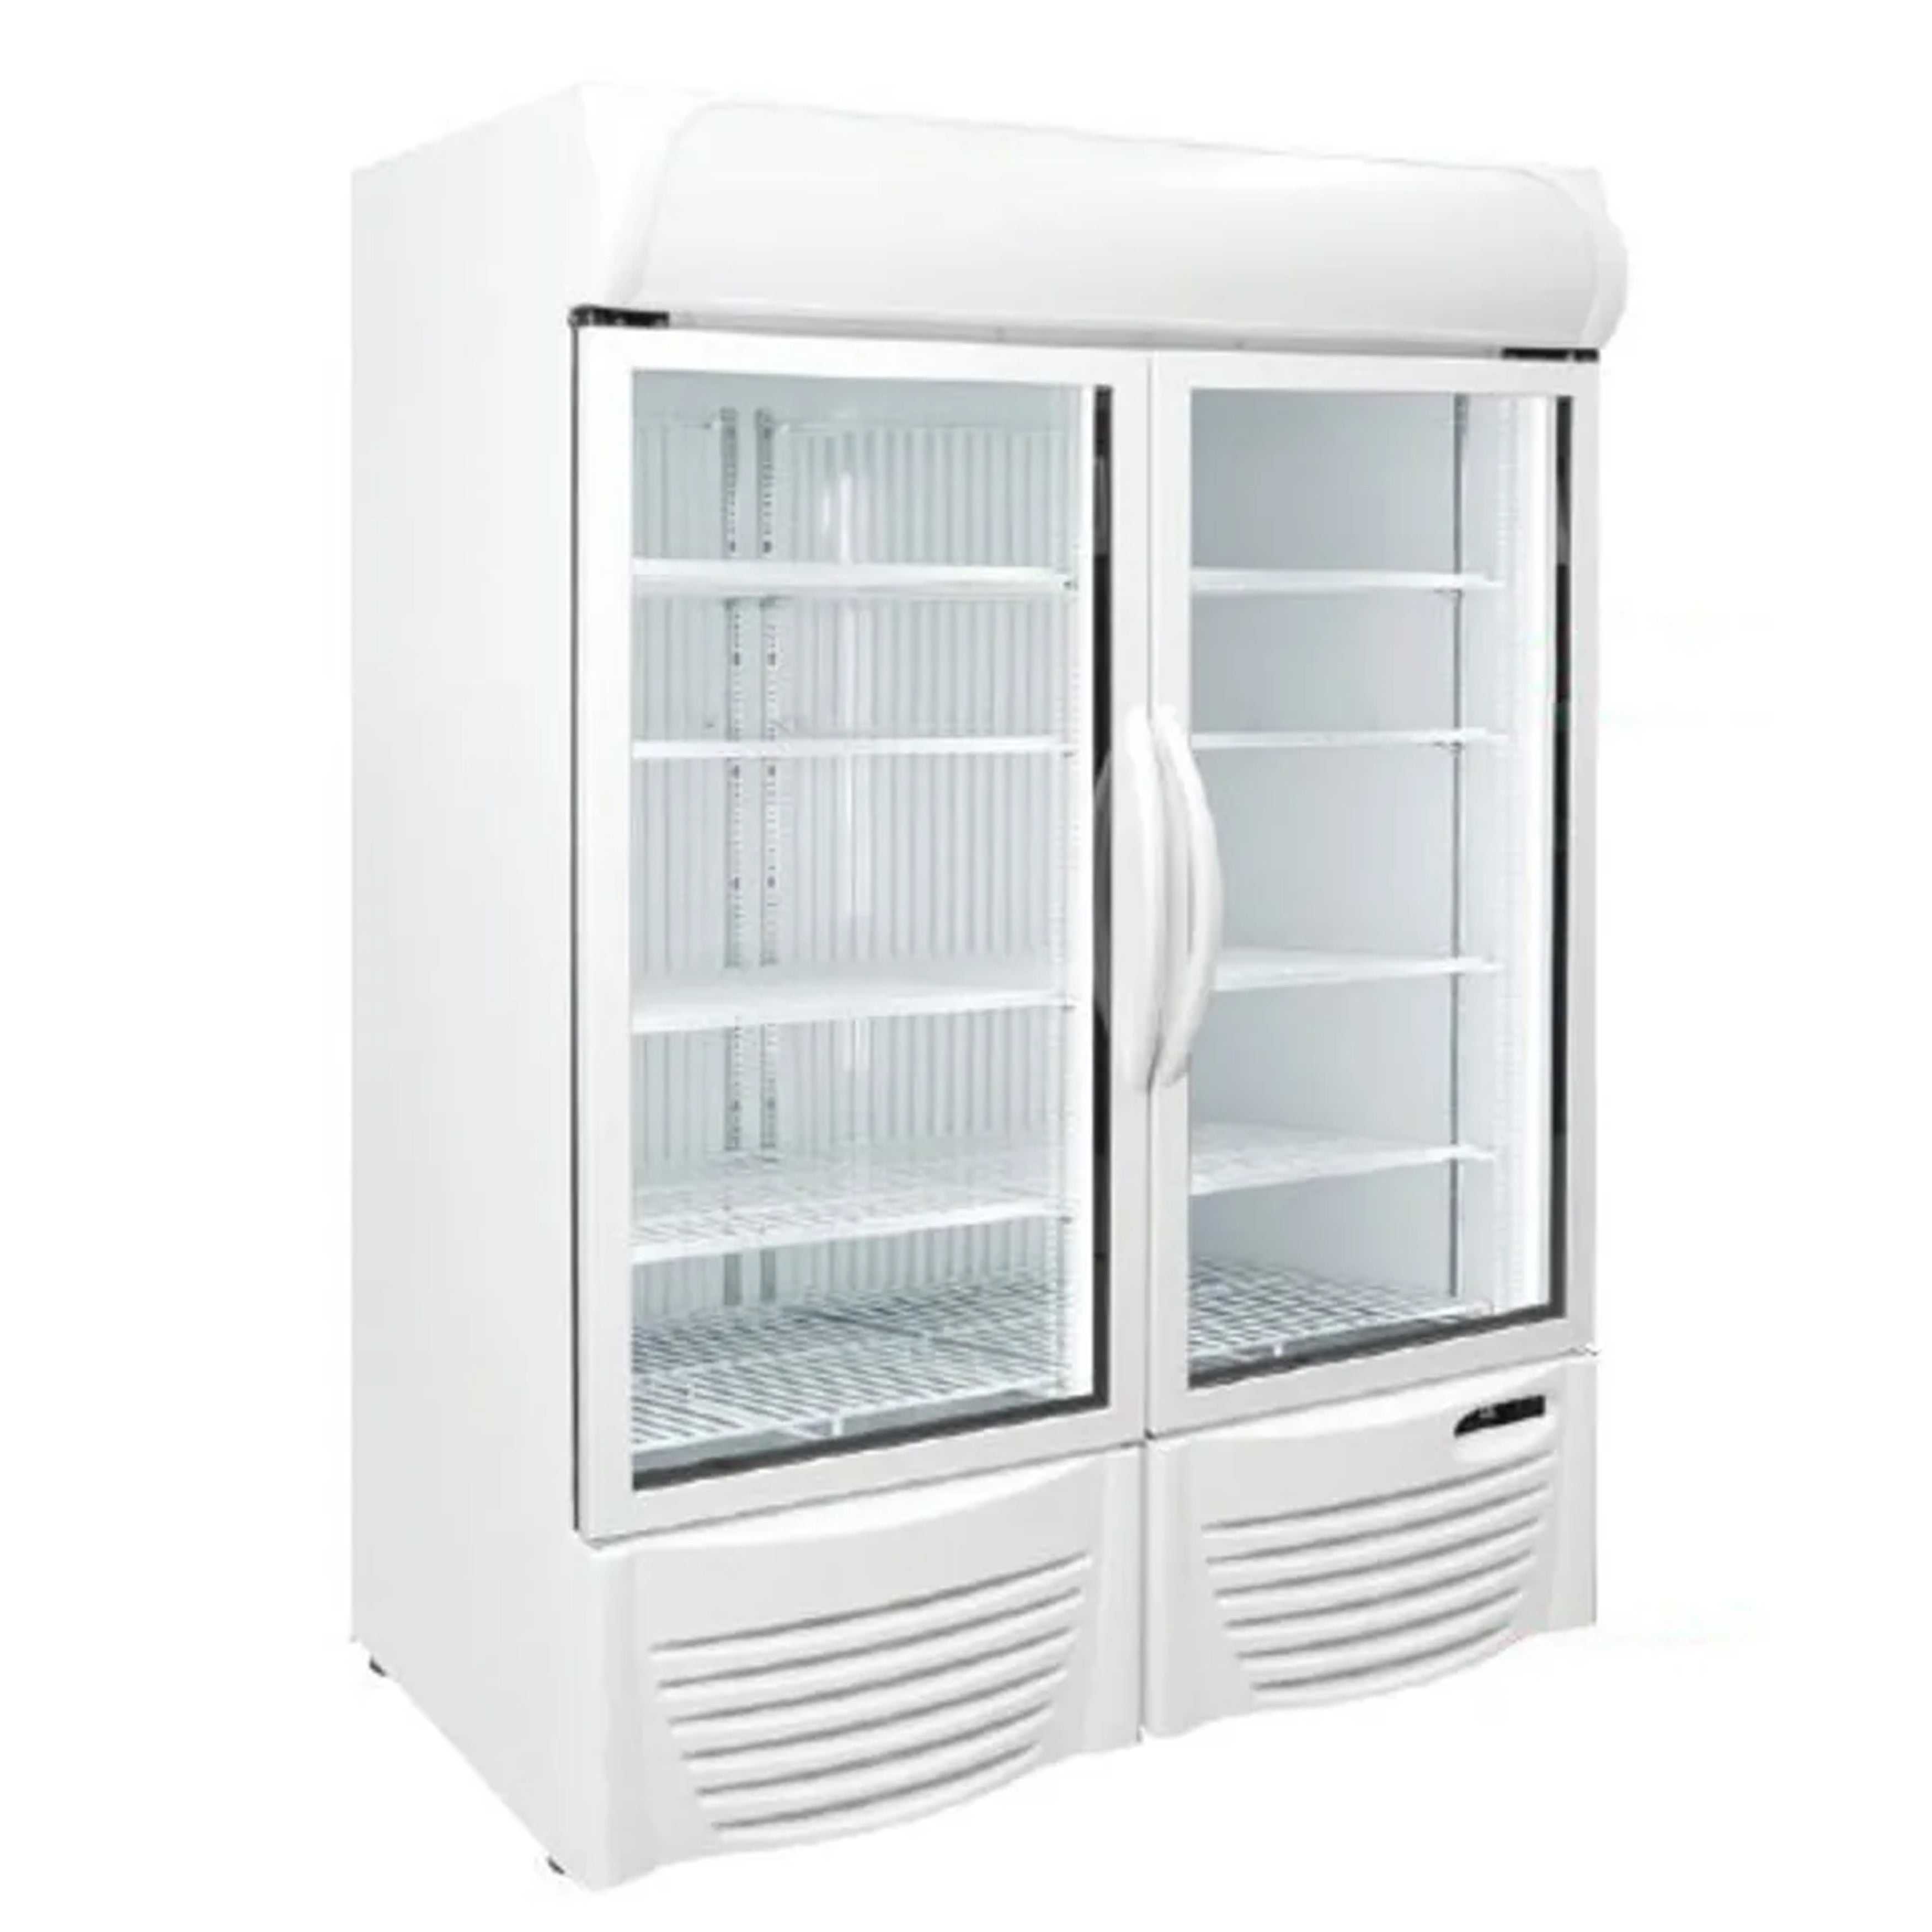 Excellence Industries - GDF-43, 46" Commercial 2 Glass Door Merchandiser Freezer 37.1 cu.ft.